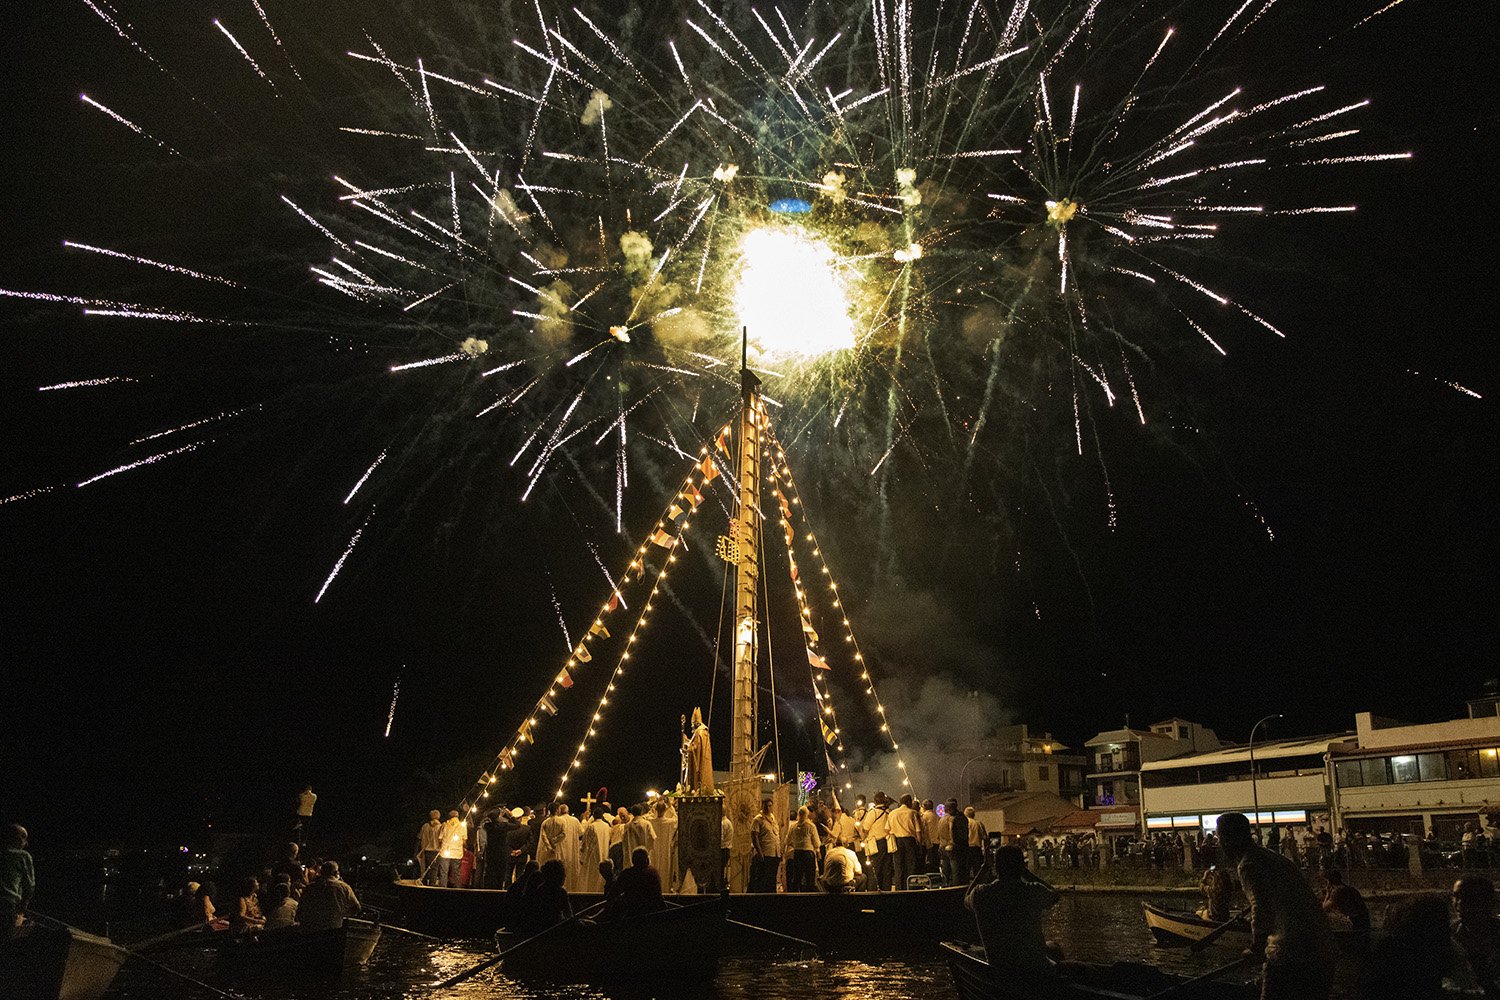  Festa di San Nicola, patrono di Ganzirri, Messina, 2023.Una tradizione che si rinnova ogni anno e che si protrae per tutta la seconda settimana di agosto fino alla processione notturna sulla feluca prevista la domenica.  